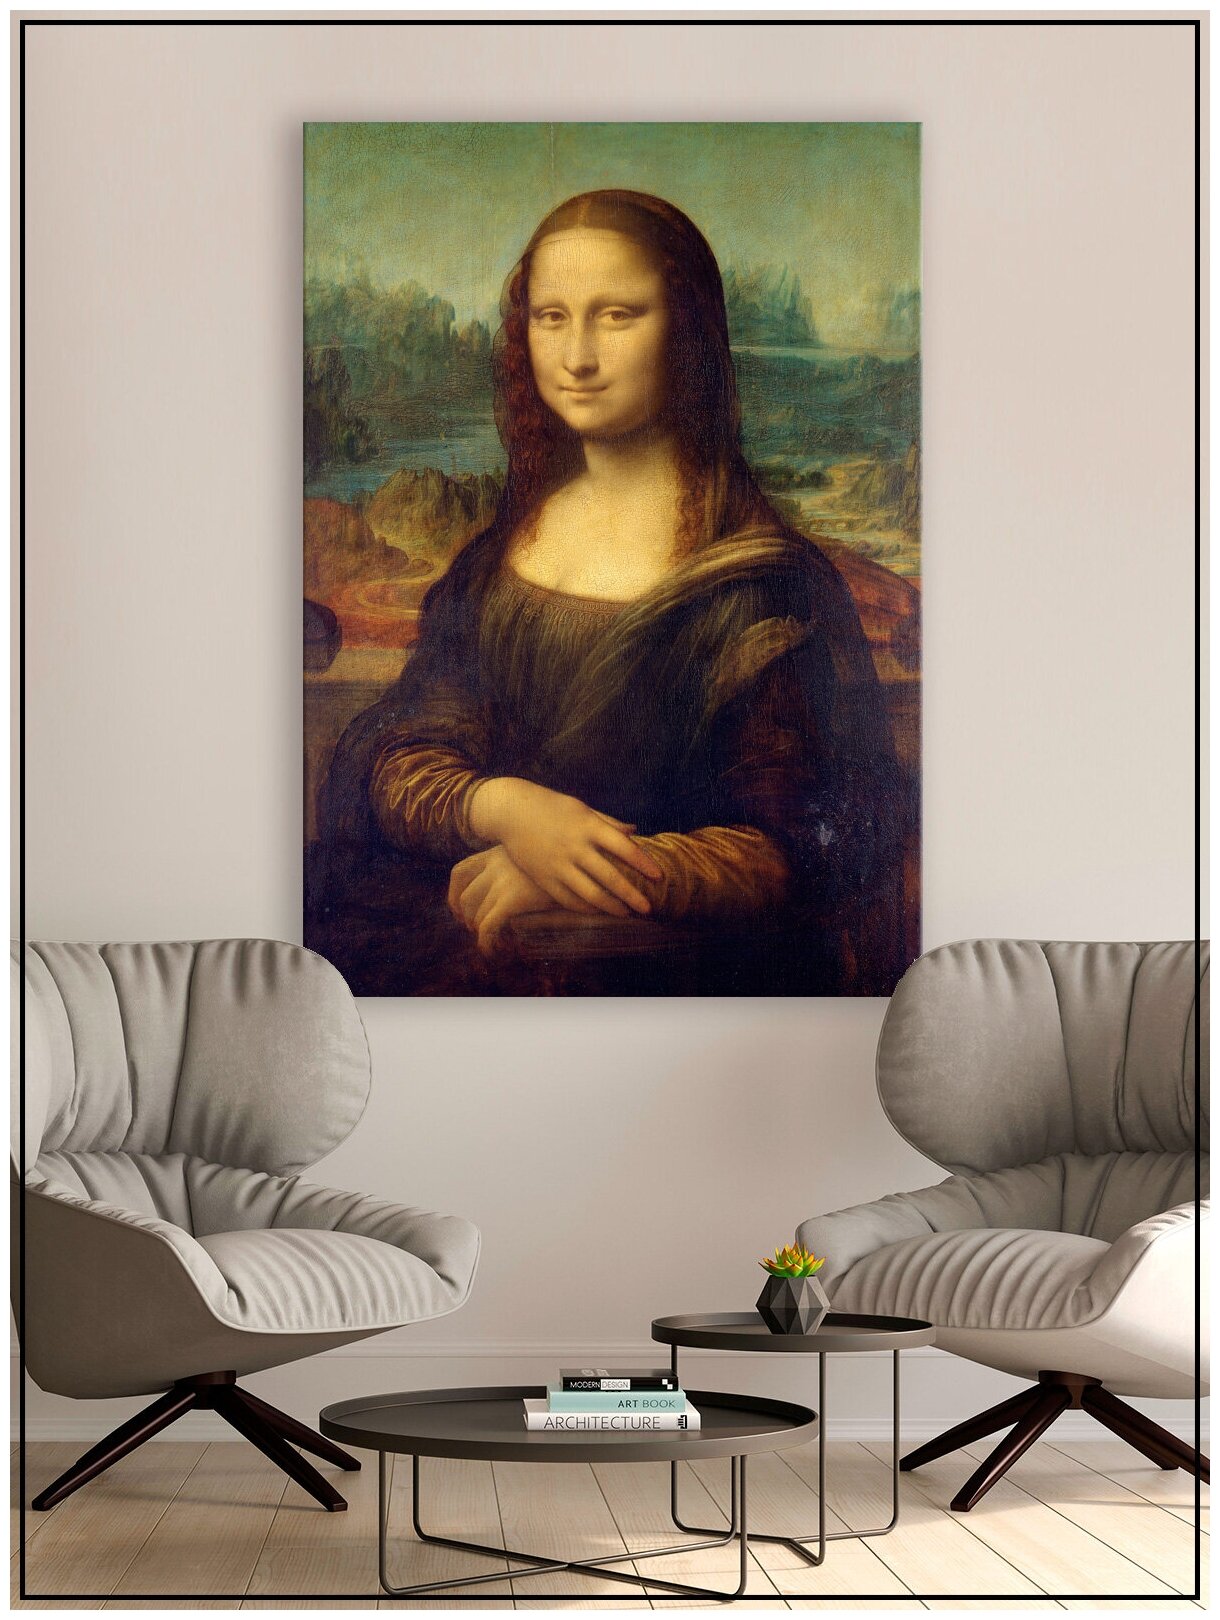 Картина для интерьера на натуральном хлопковом холсте "Мона Лиза", 30*40см, холст на подрамнике, картина в подарок для дома